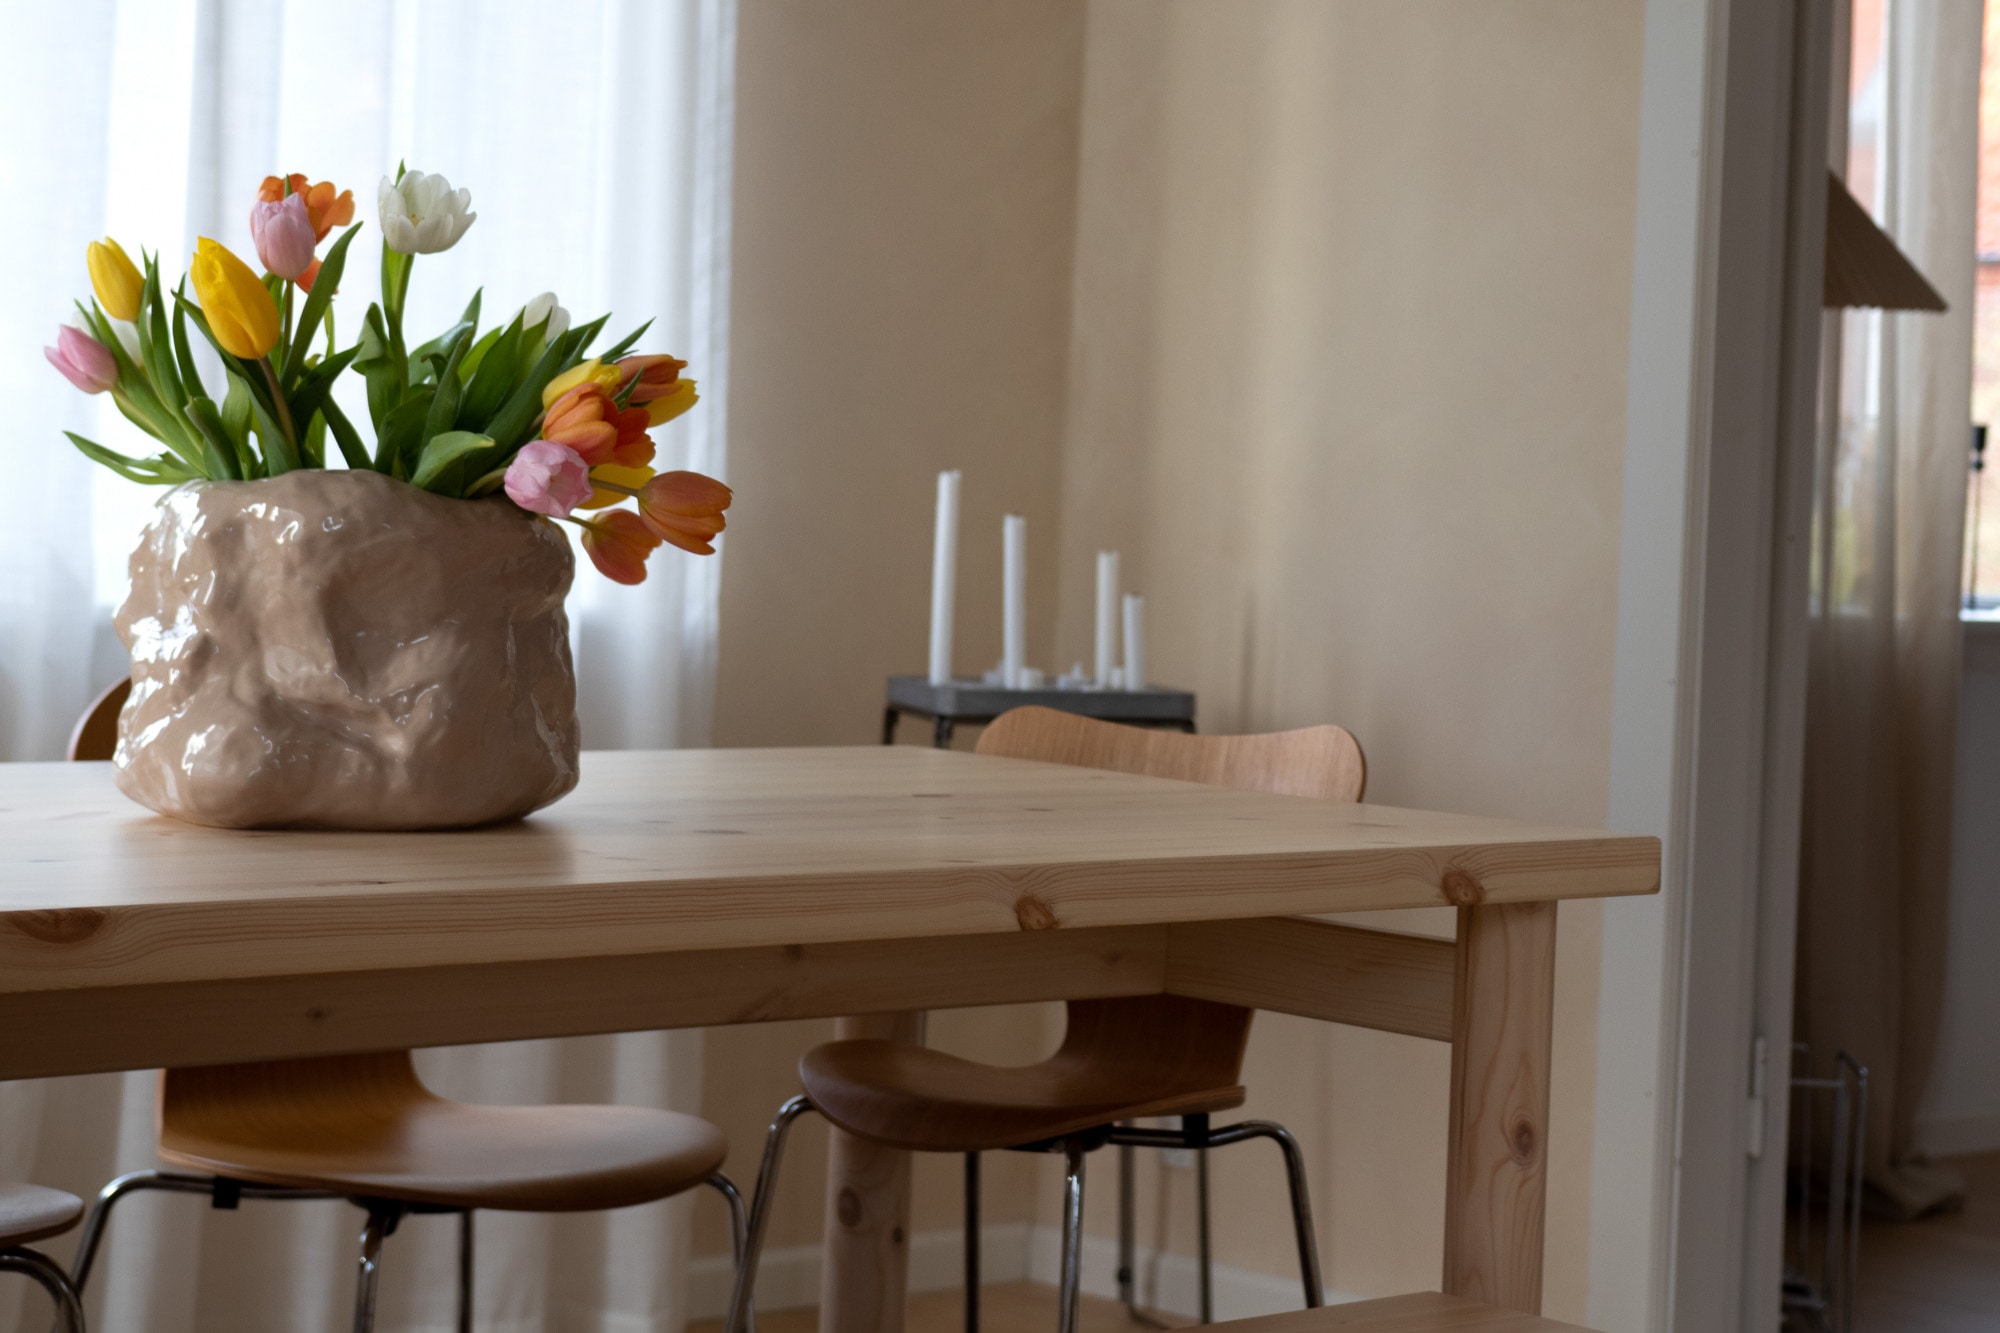 Karup Design Esstisch »PACE DINING TABLE«, aus FSC-zertifiziertem Kiefernholz, Grösse 150 x 75 cm.